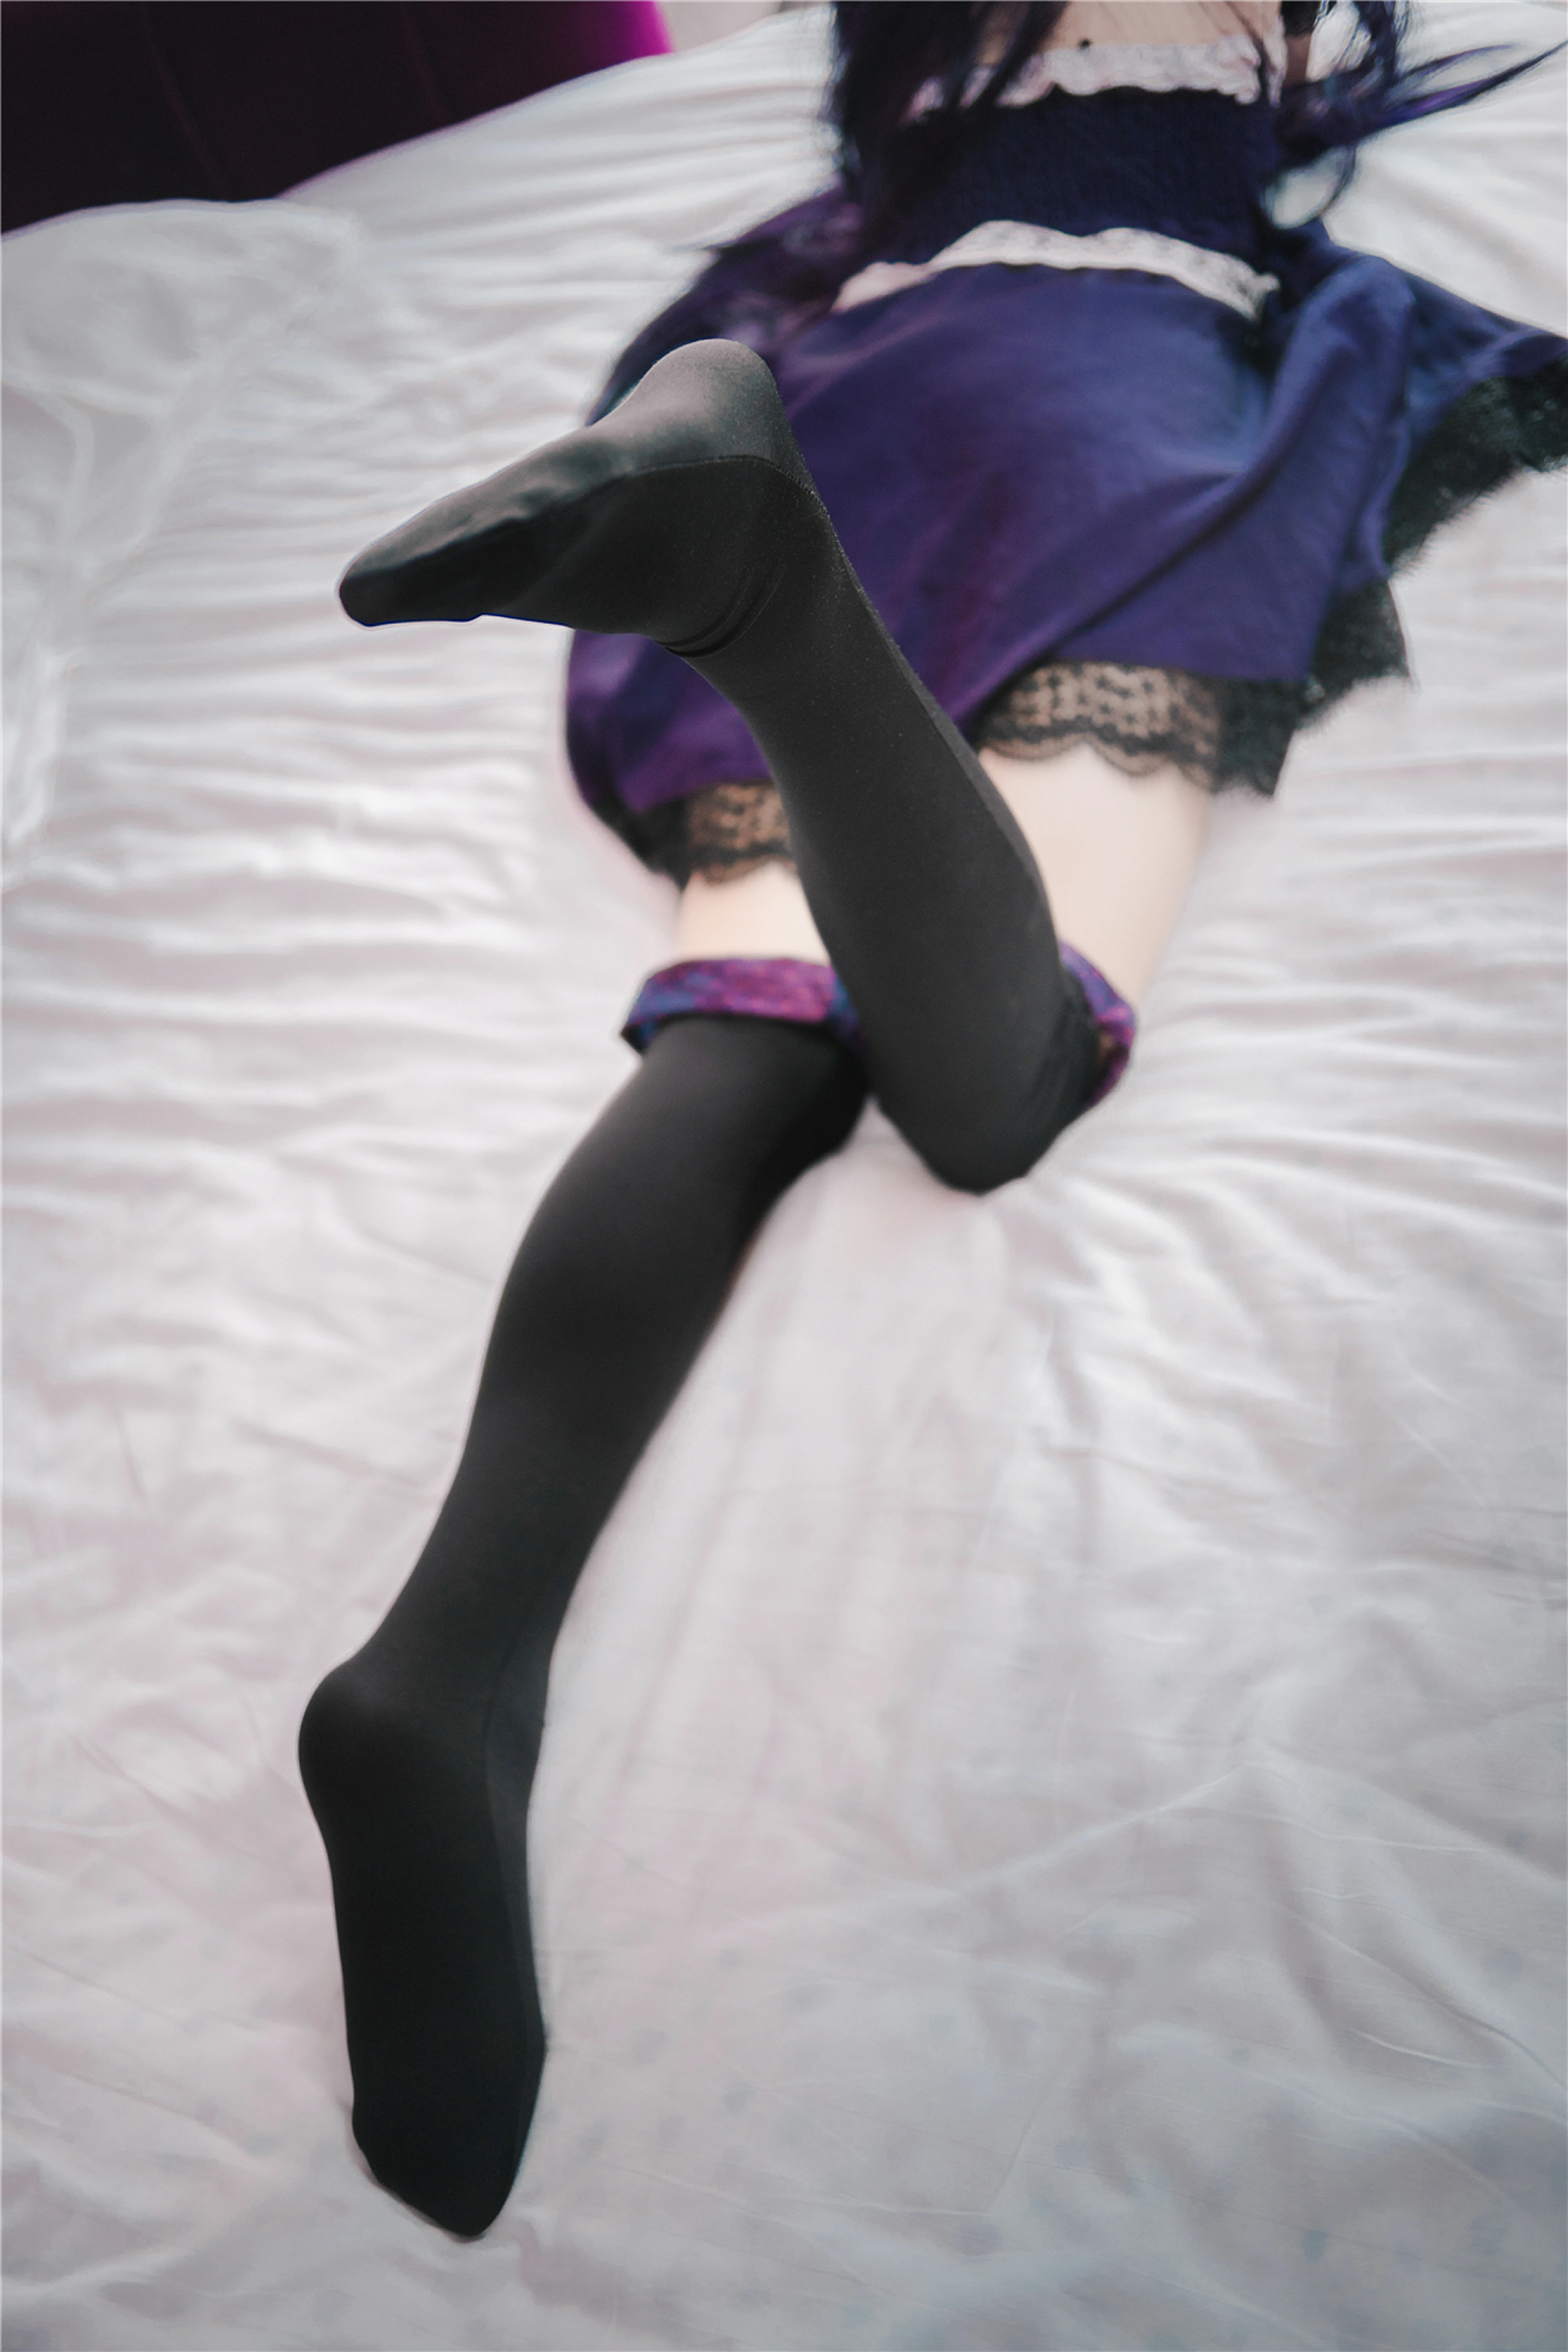 [风之领域]NO.203 清纯小萝莉 紫色抹胸蕾丝连衣裙加黑丝美腿性感私房写真集,